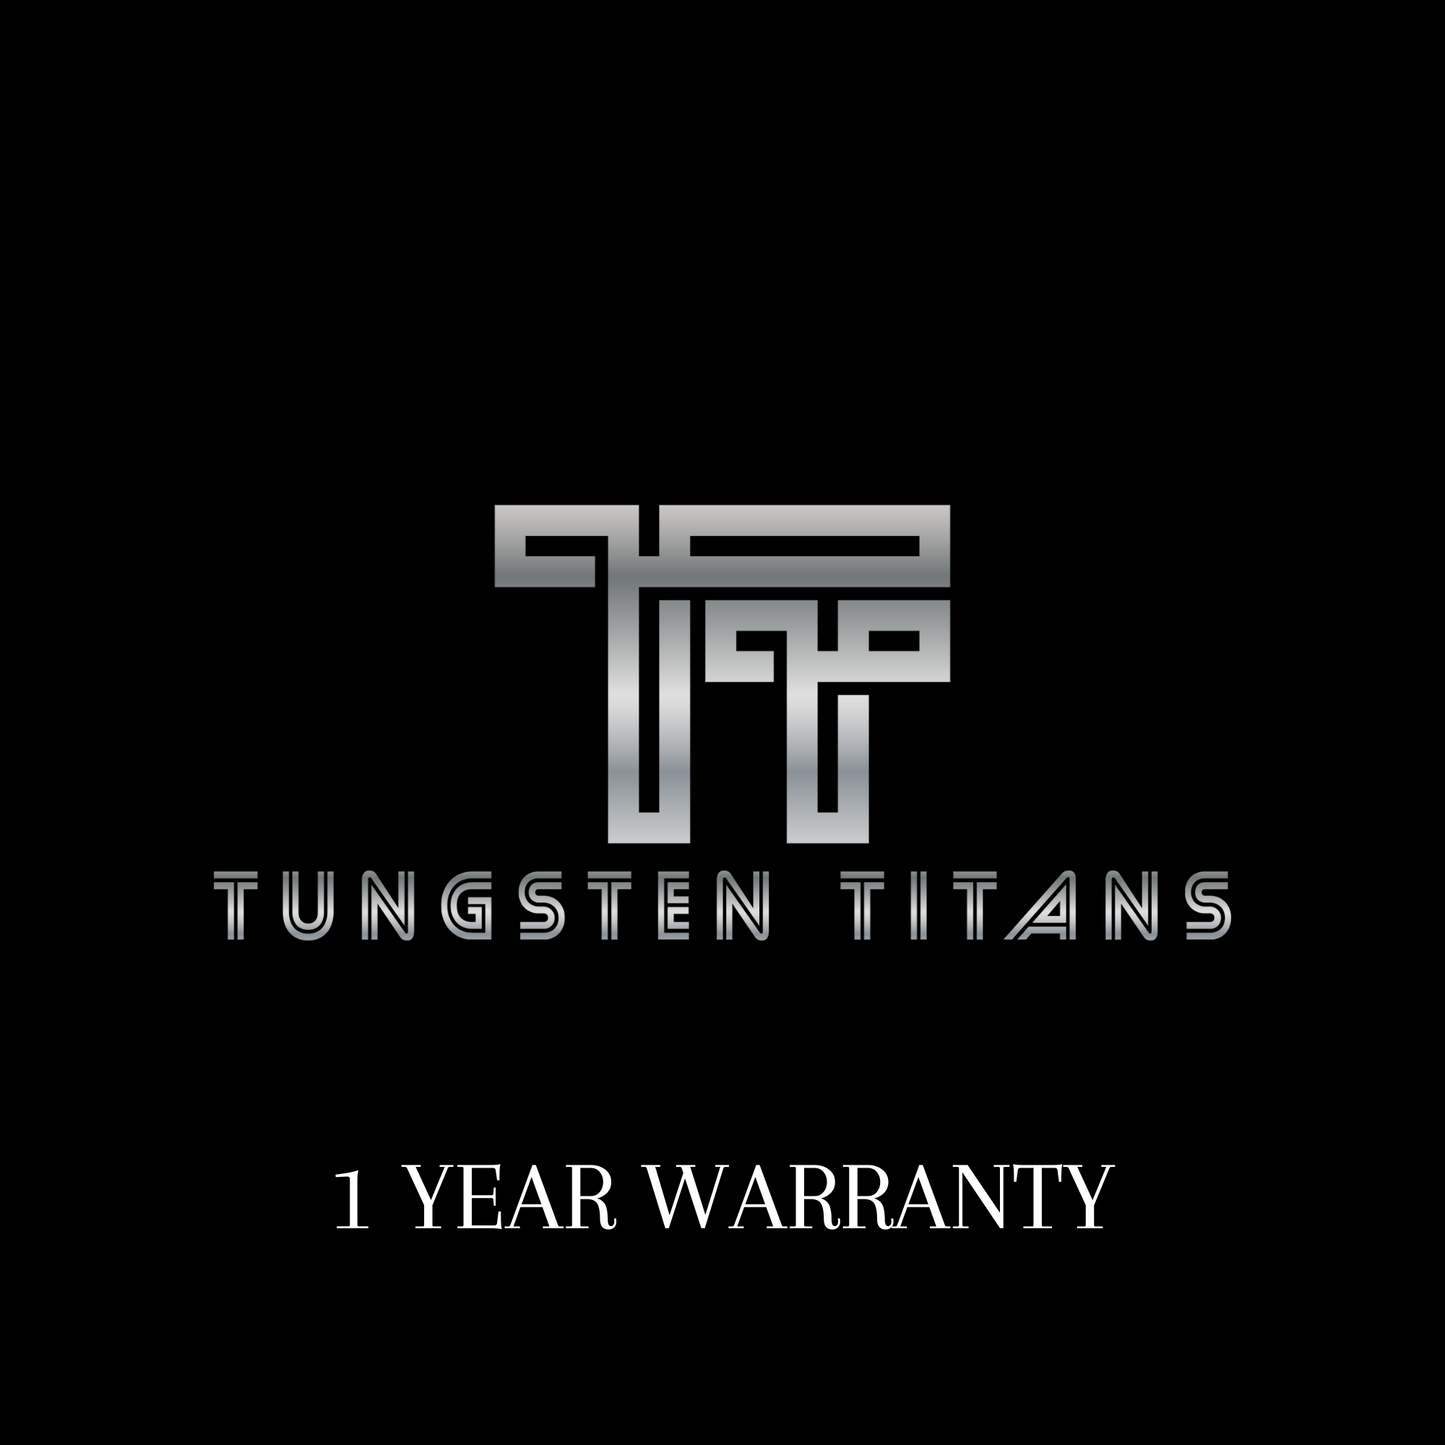 Warranty - Tungsten Titans